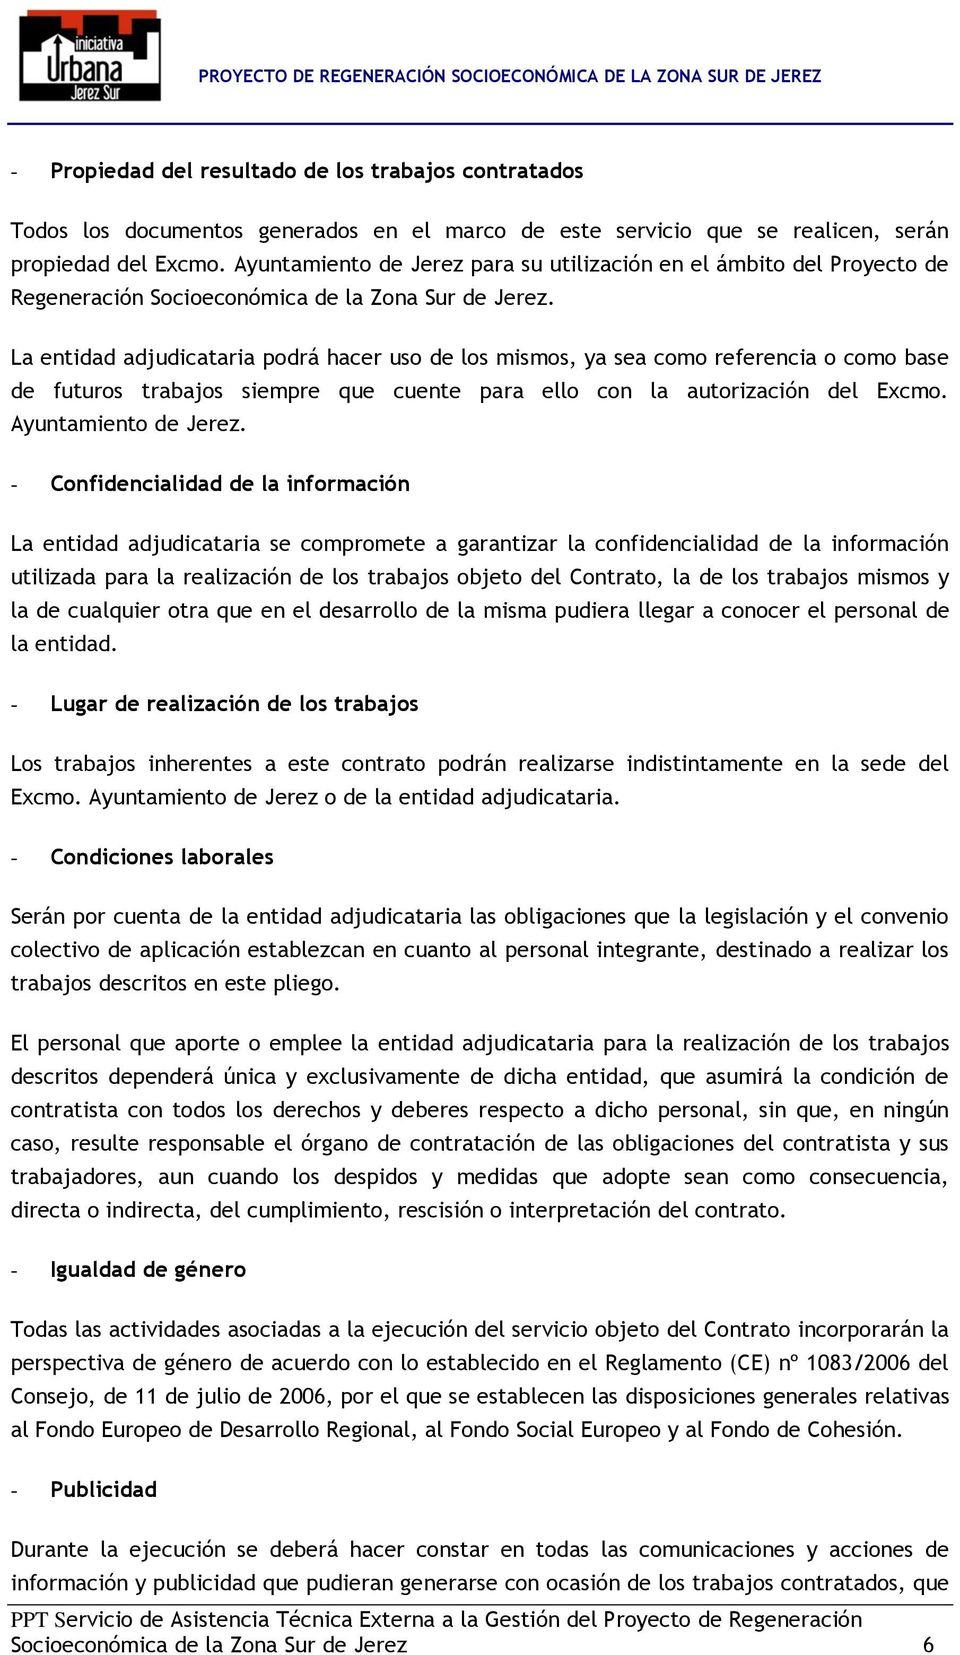 La entidad adjudicataria podrá hacer uso de los mismos, ya sea como referencia o como base de futuros trabajos siempre que cuente para ello con la autorización del Excmo. Ayuntamiento de Jerez.